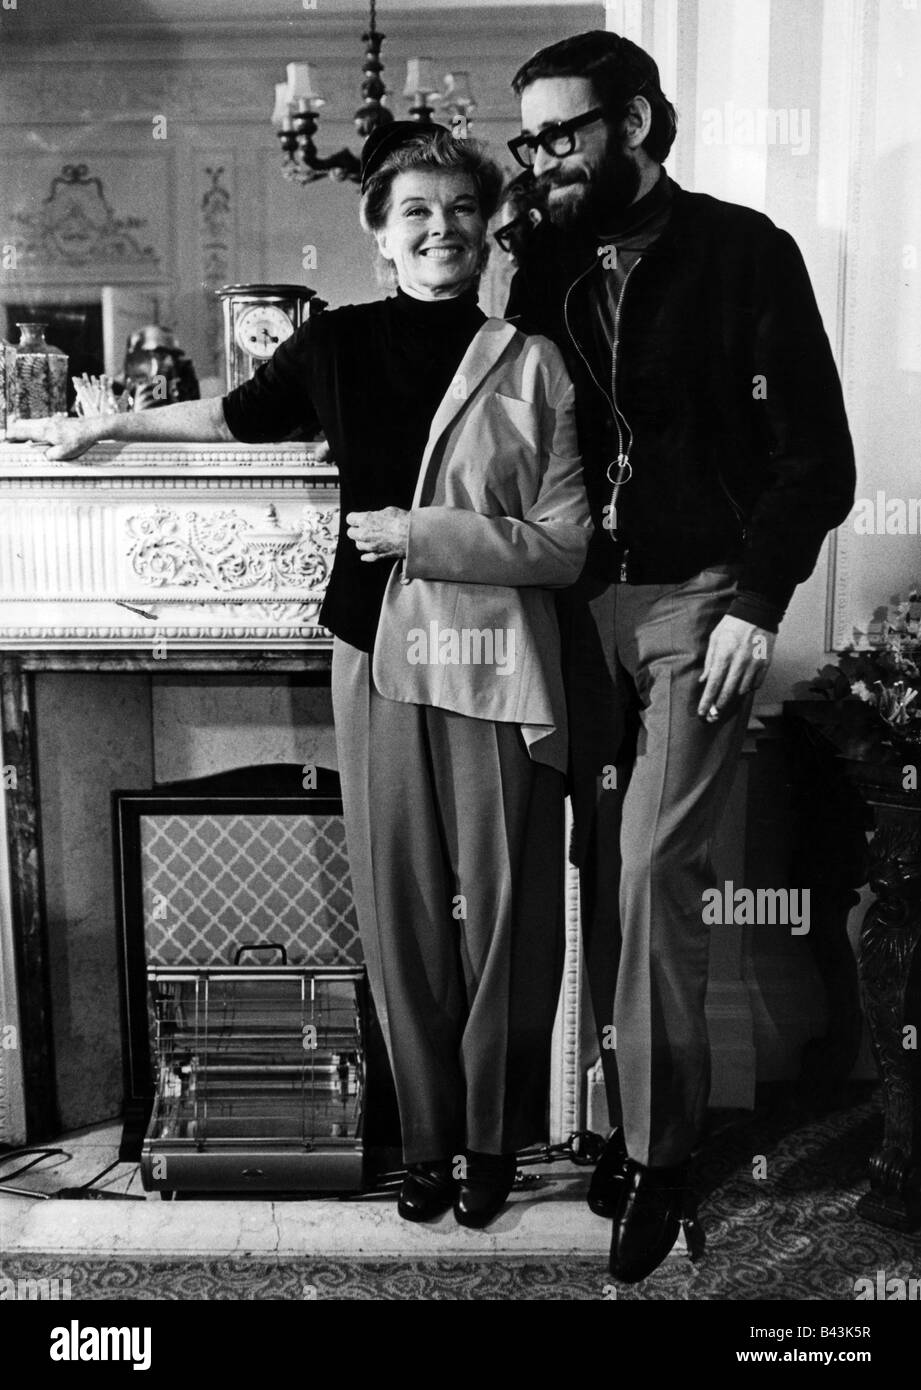 20 Fascinating Vintage Photos of Katharine Hepburn Wearing WideLeg Pants   Vintage Everyday